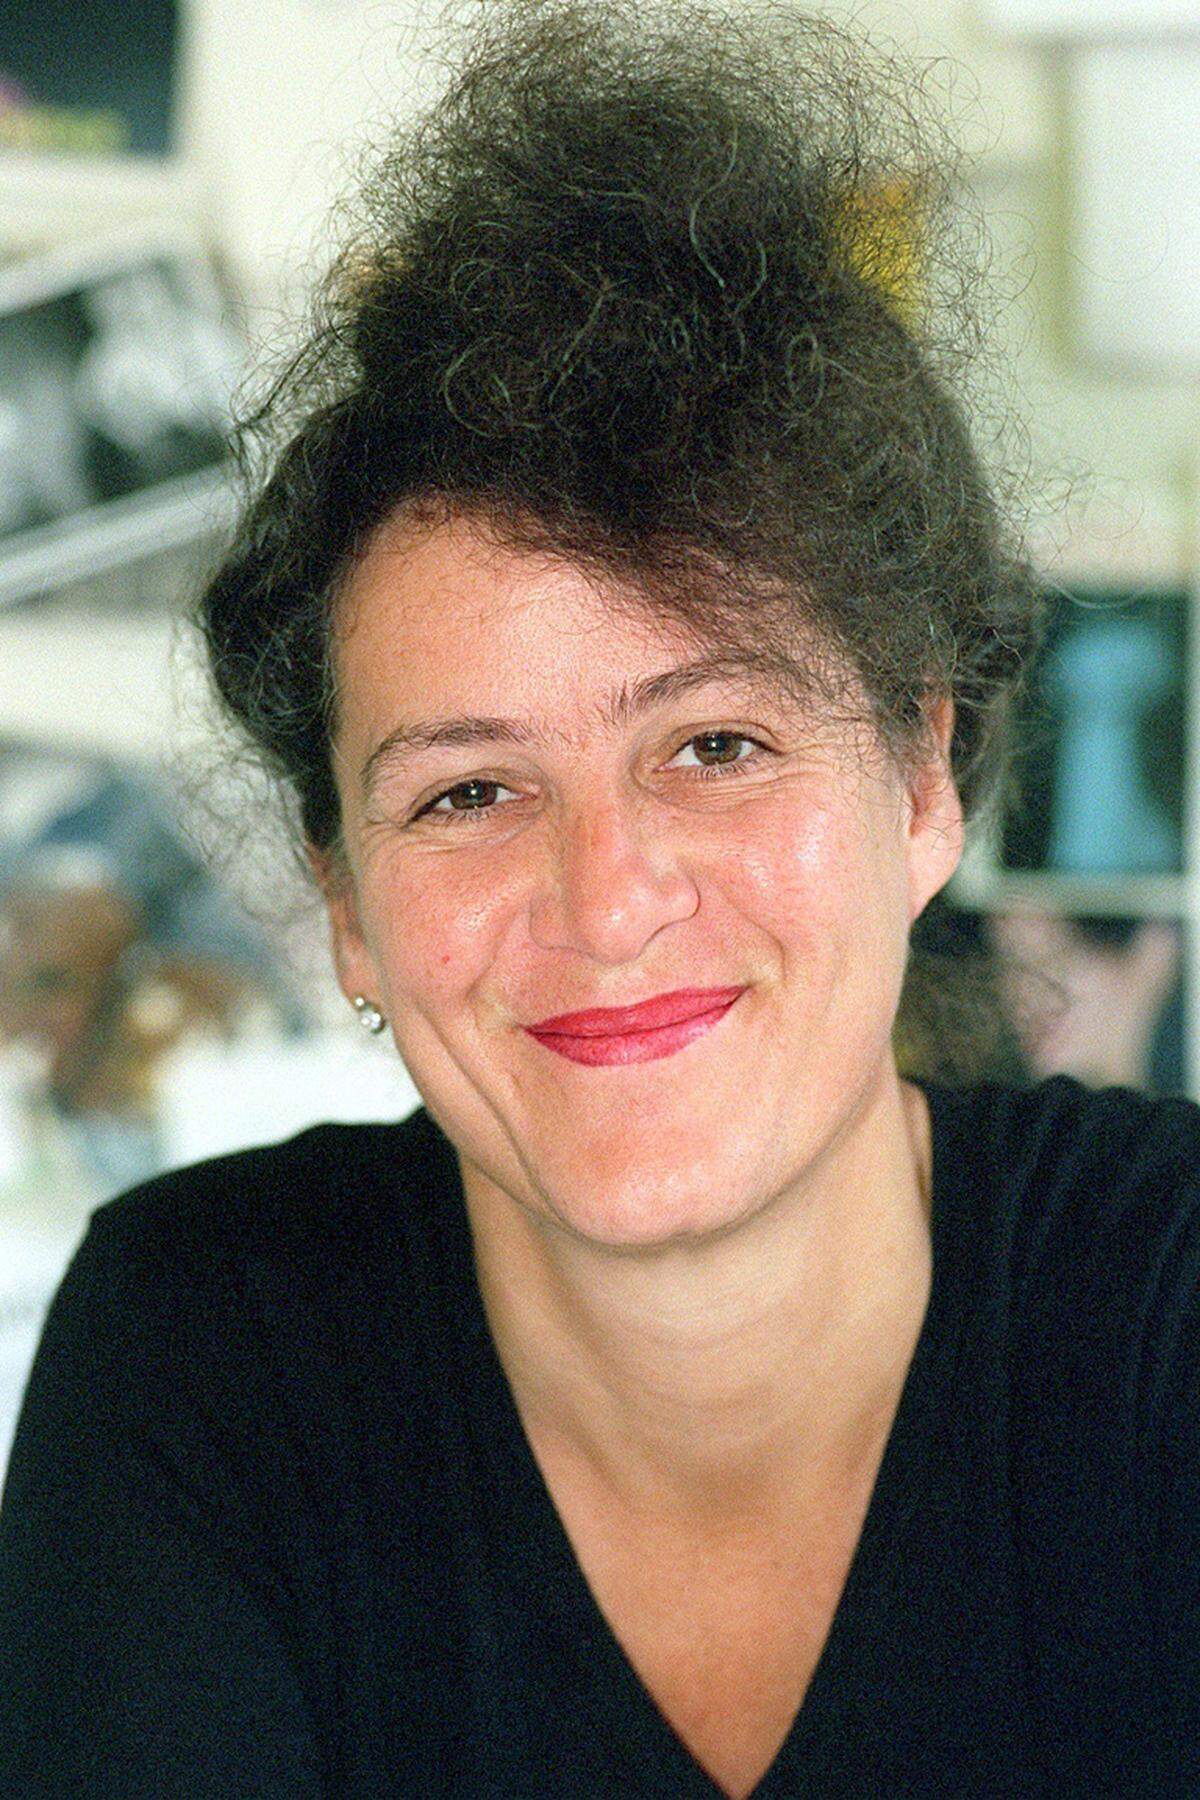 Die gebürtige Wienerin Elisabeth Schweeger war 2001 bis 2009 Intendantin des Frankfurter Schauspielhauses. Seit 2009 ist sie Intendantin der Kunstfestspiele Herrenhausen, Hannover.